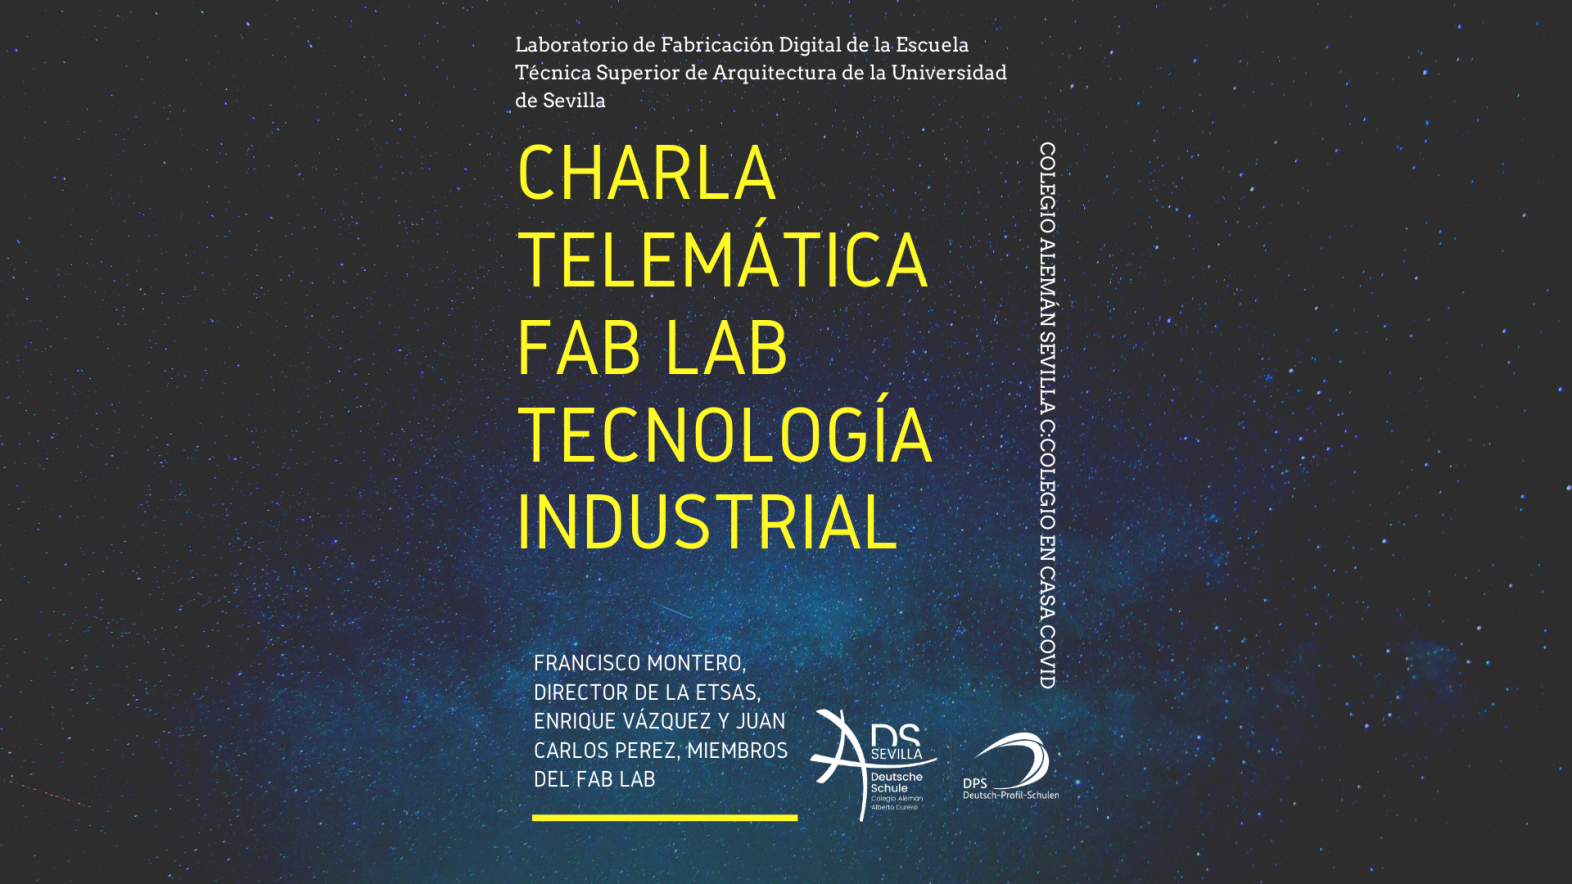 Videokonferenz “Fab Lab” Industrietechnik